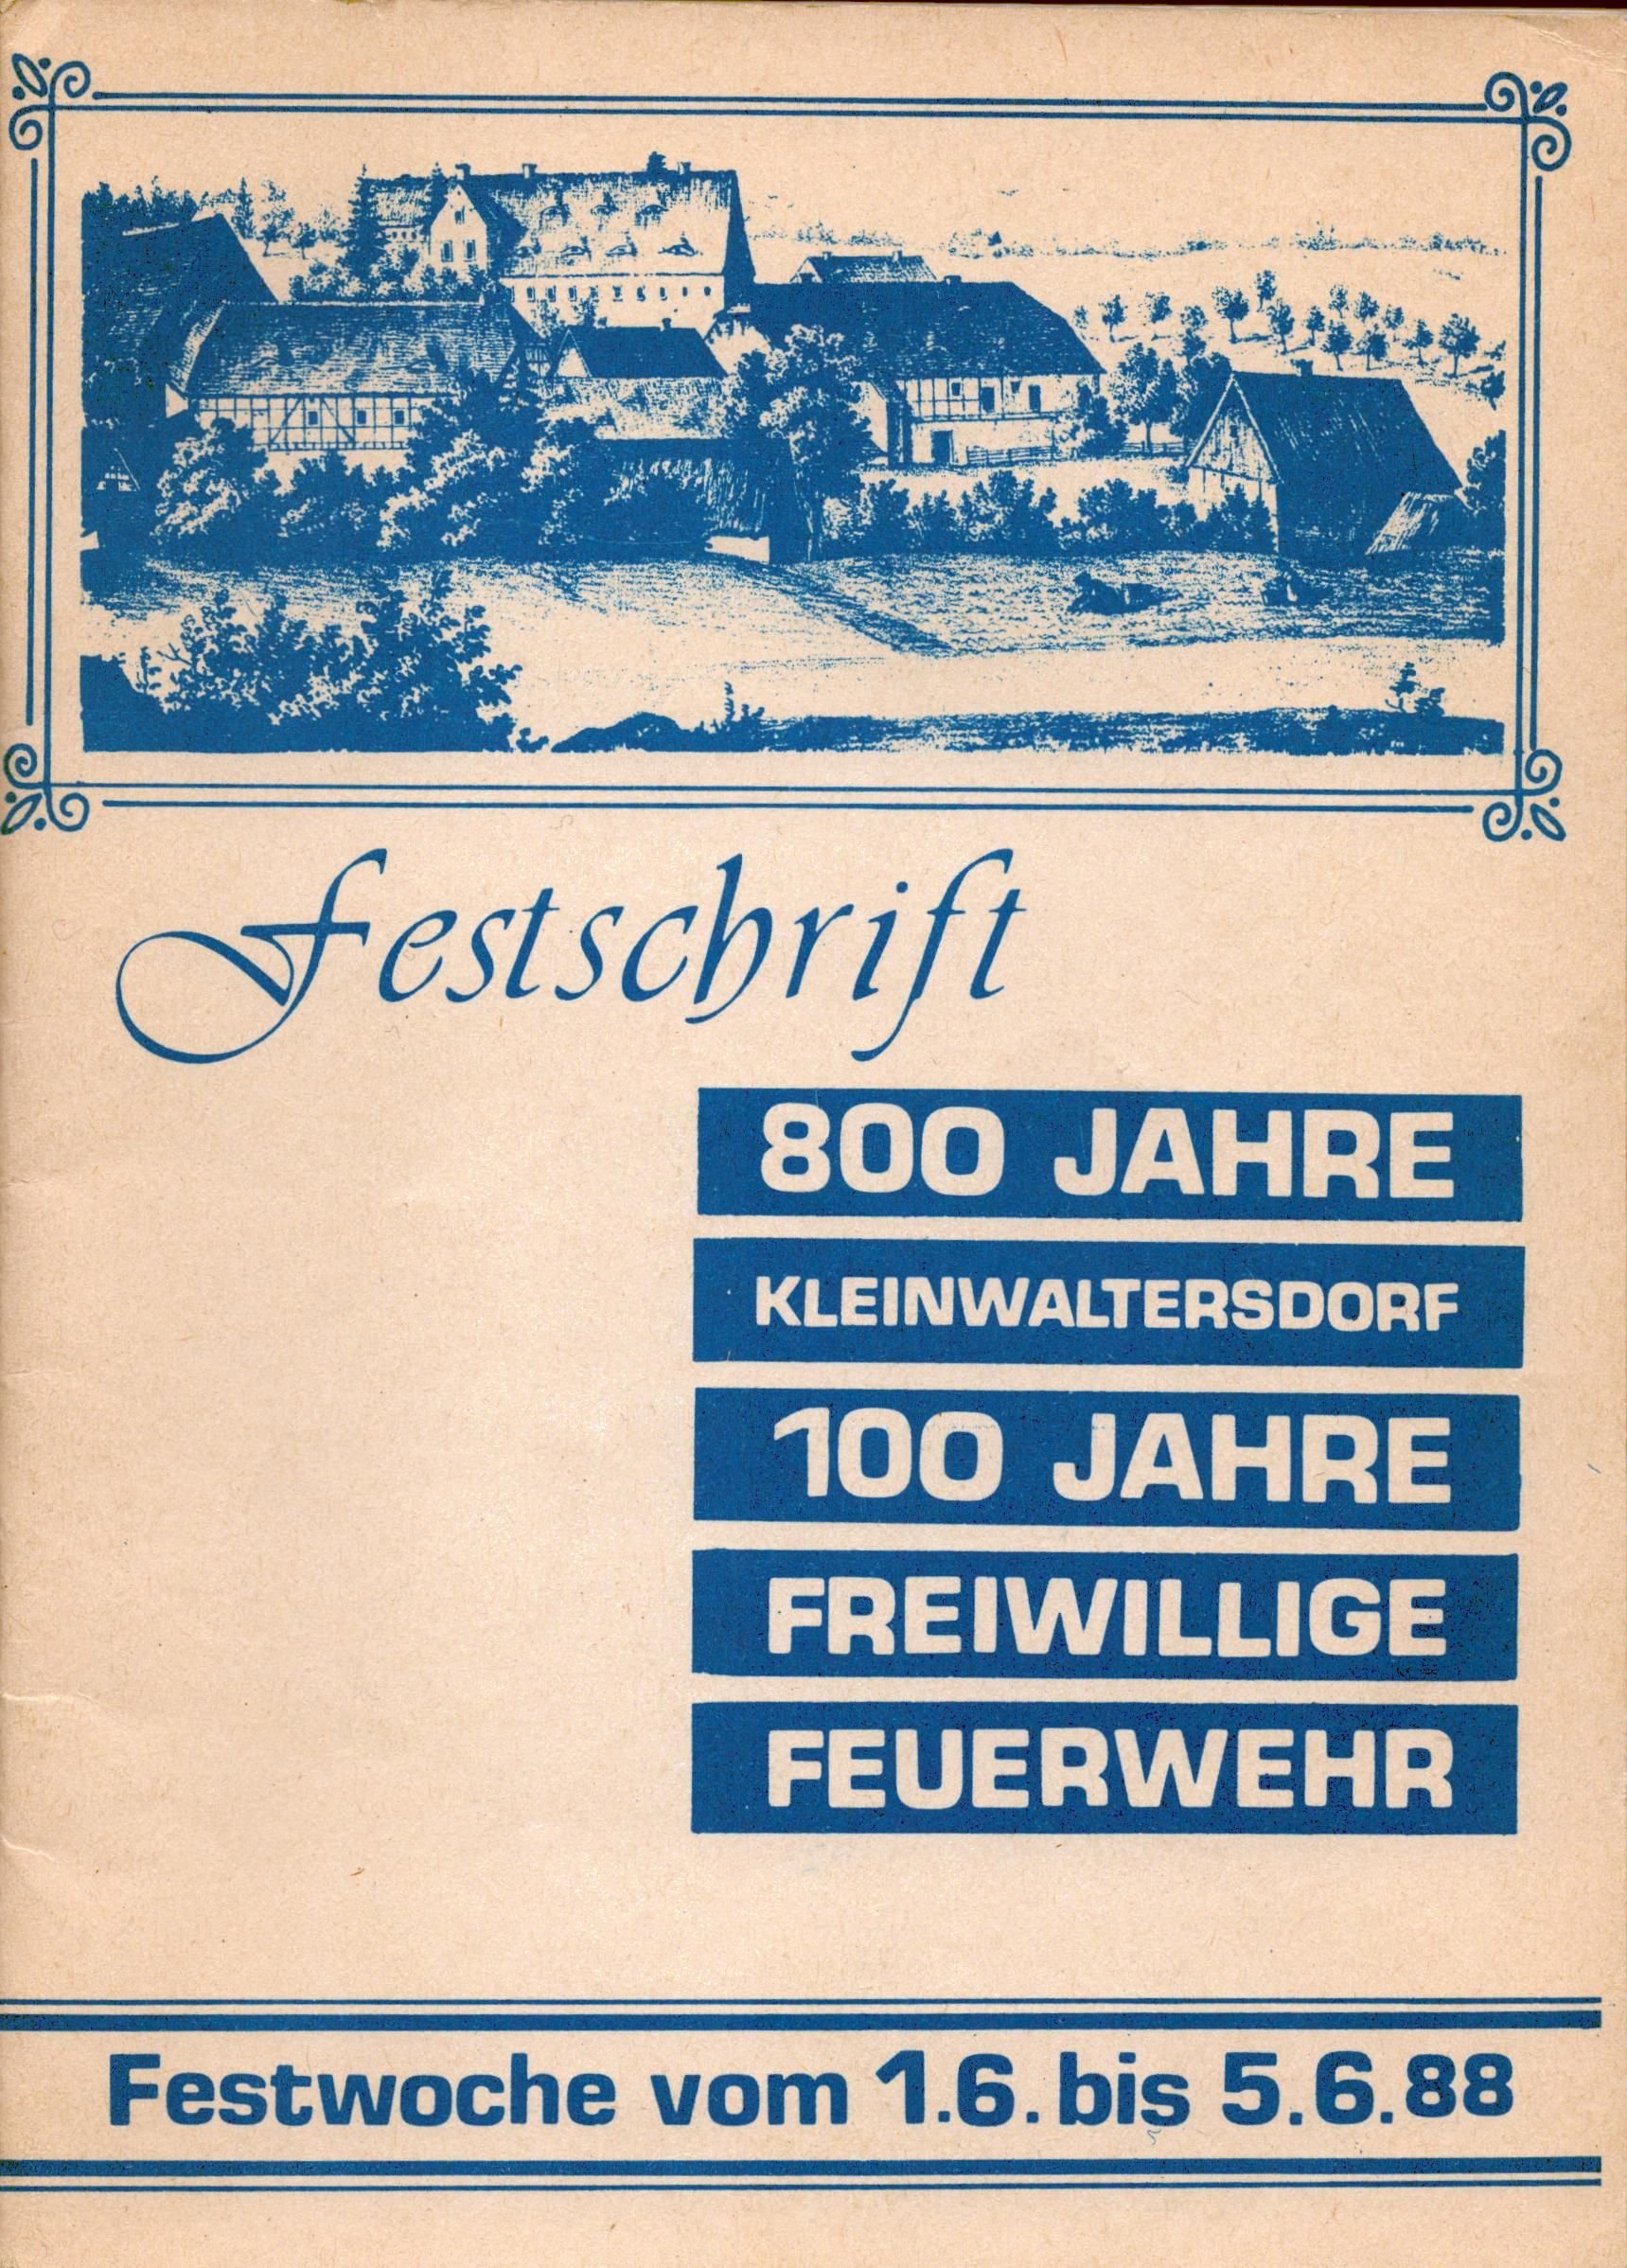 Festschrift 800 Jahre Kleinwaltersdorf, 100 Jahre Freiwillige Feuerwehr (Archiv SAXONIA-FREIBERG-STIFTUNG CC BY-NC-SA)